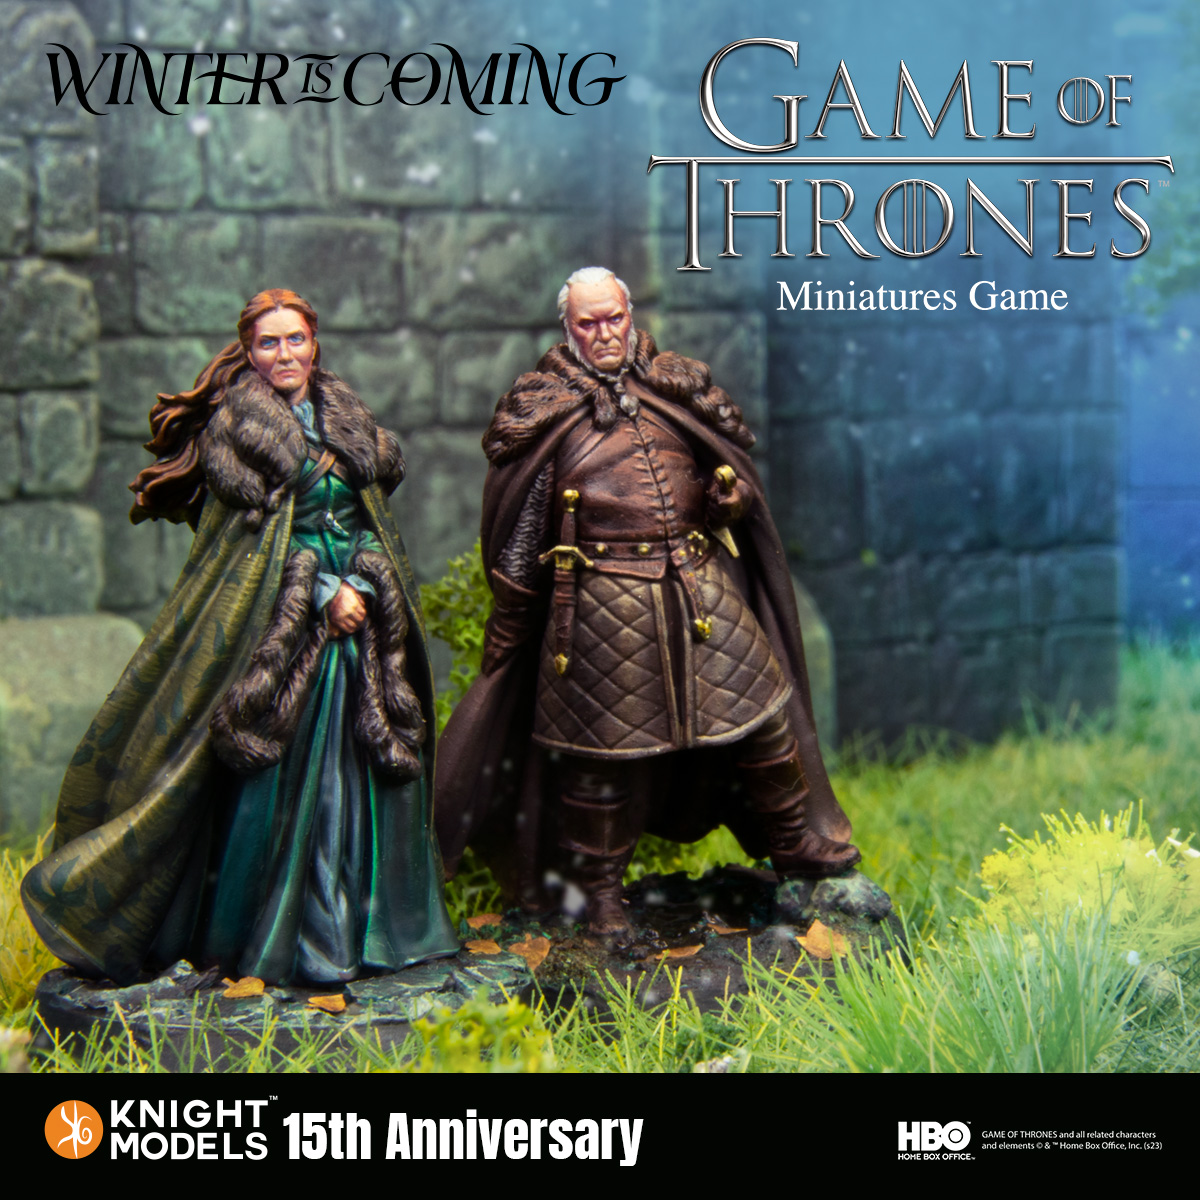 Catelyn Stark & Rodrik Cassel - A Game Of Thrones